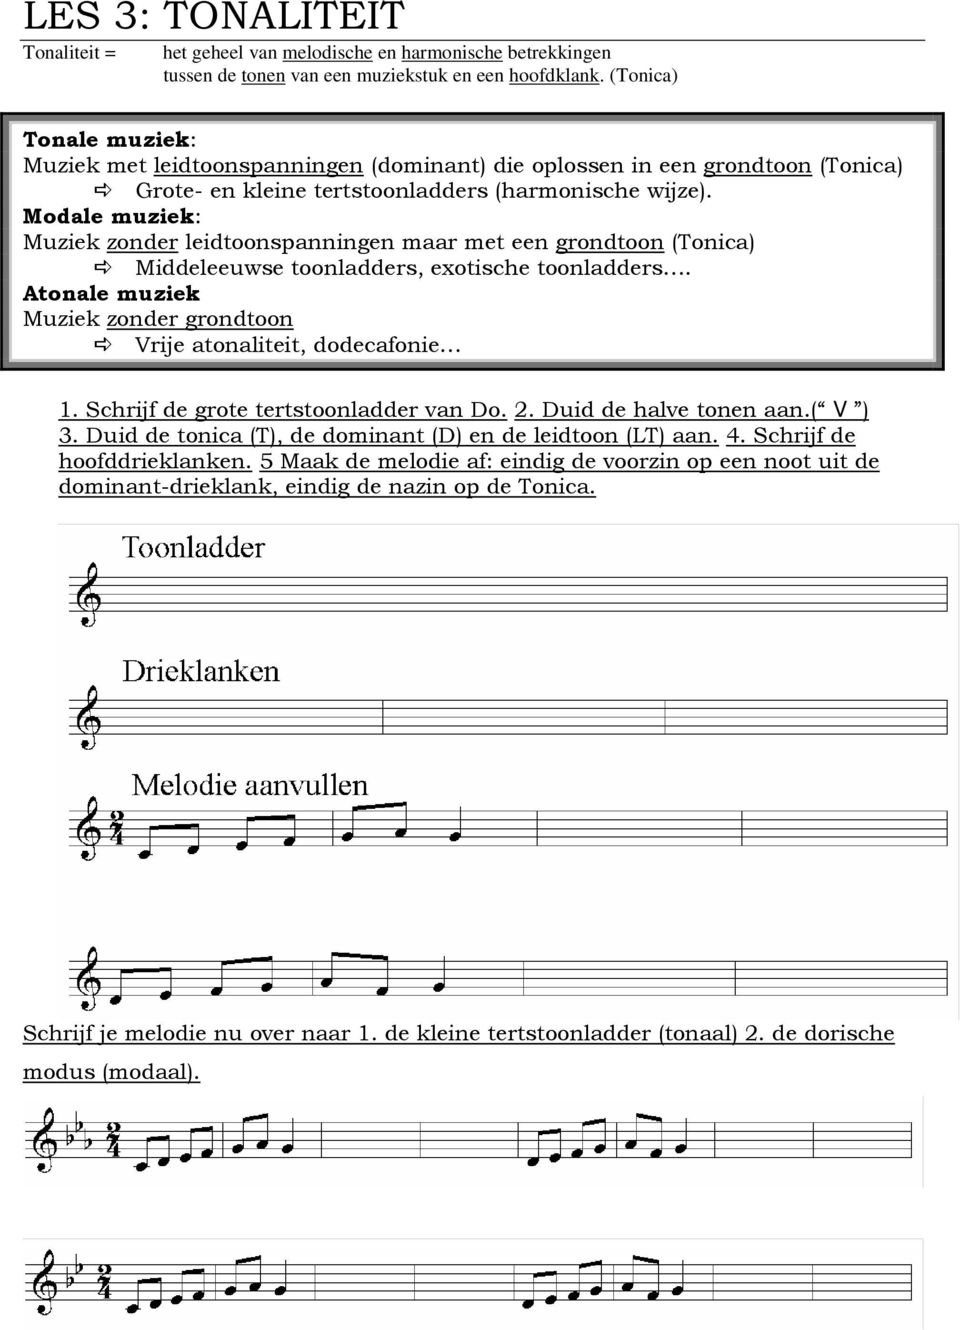 Modale muziek: Muziek zonder leidtoonspanningen maar met een grondtoon (Tonica) Middeleeuwse toonladders, exotische toonladders.